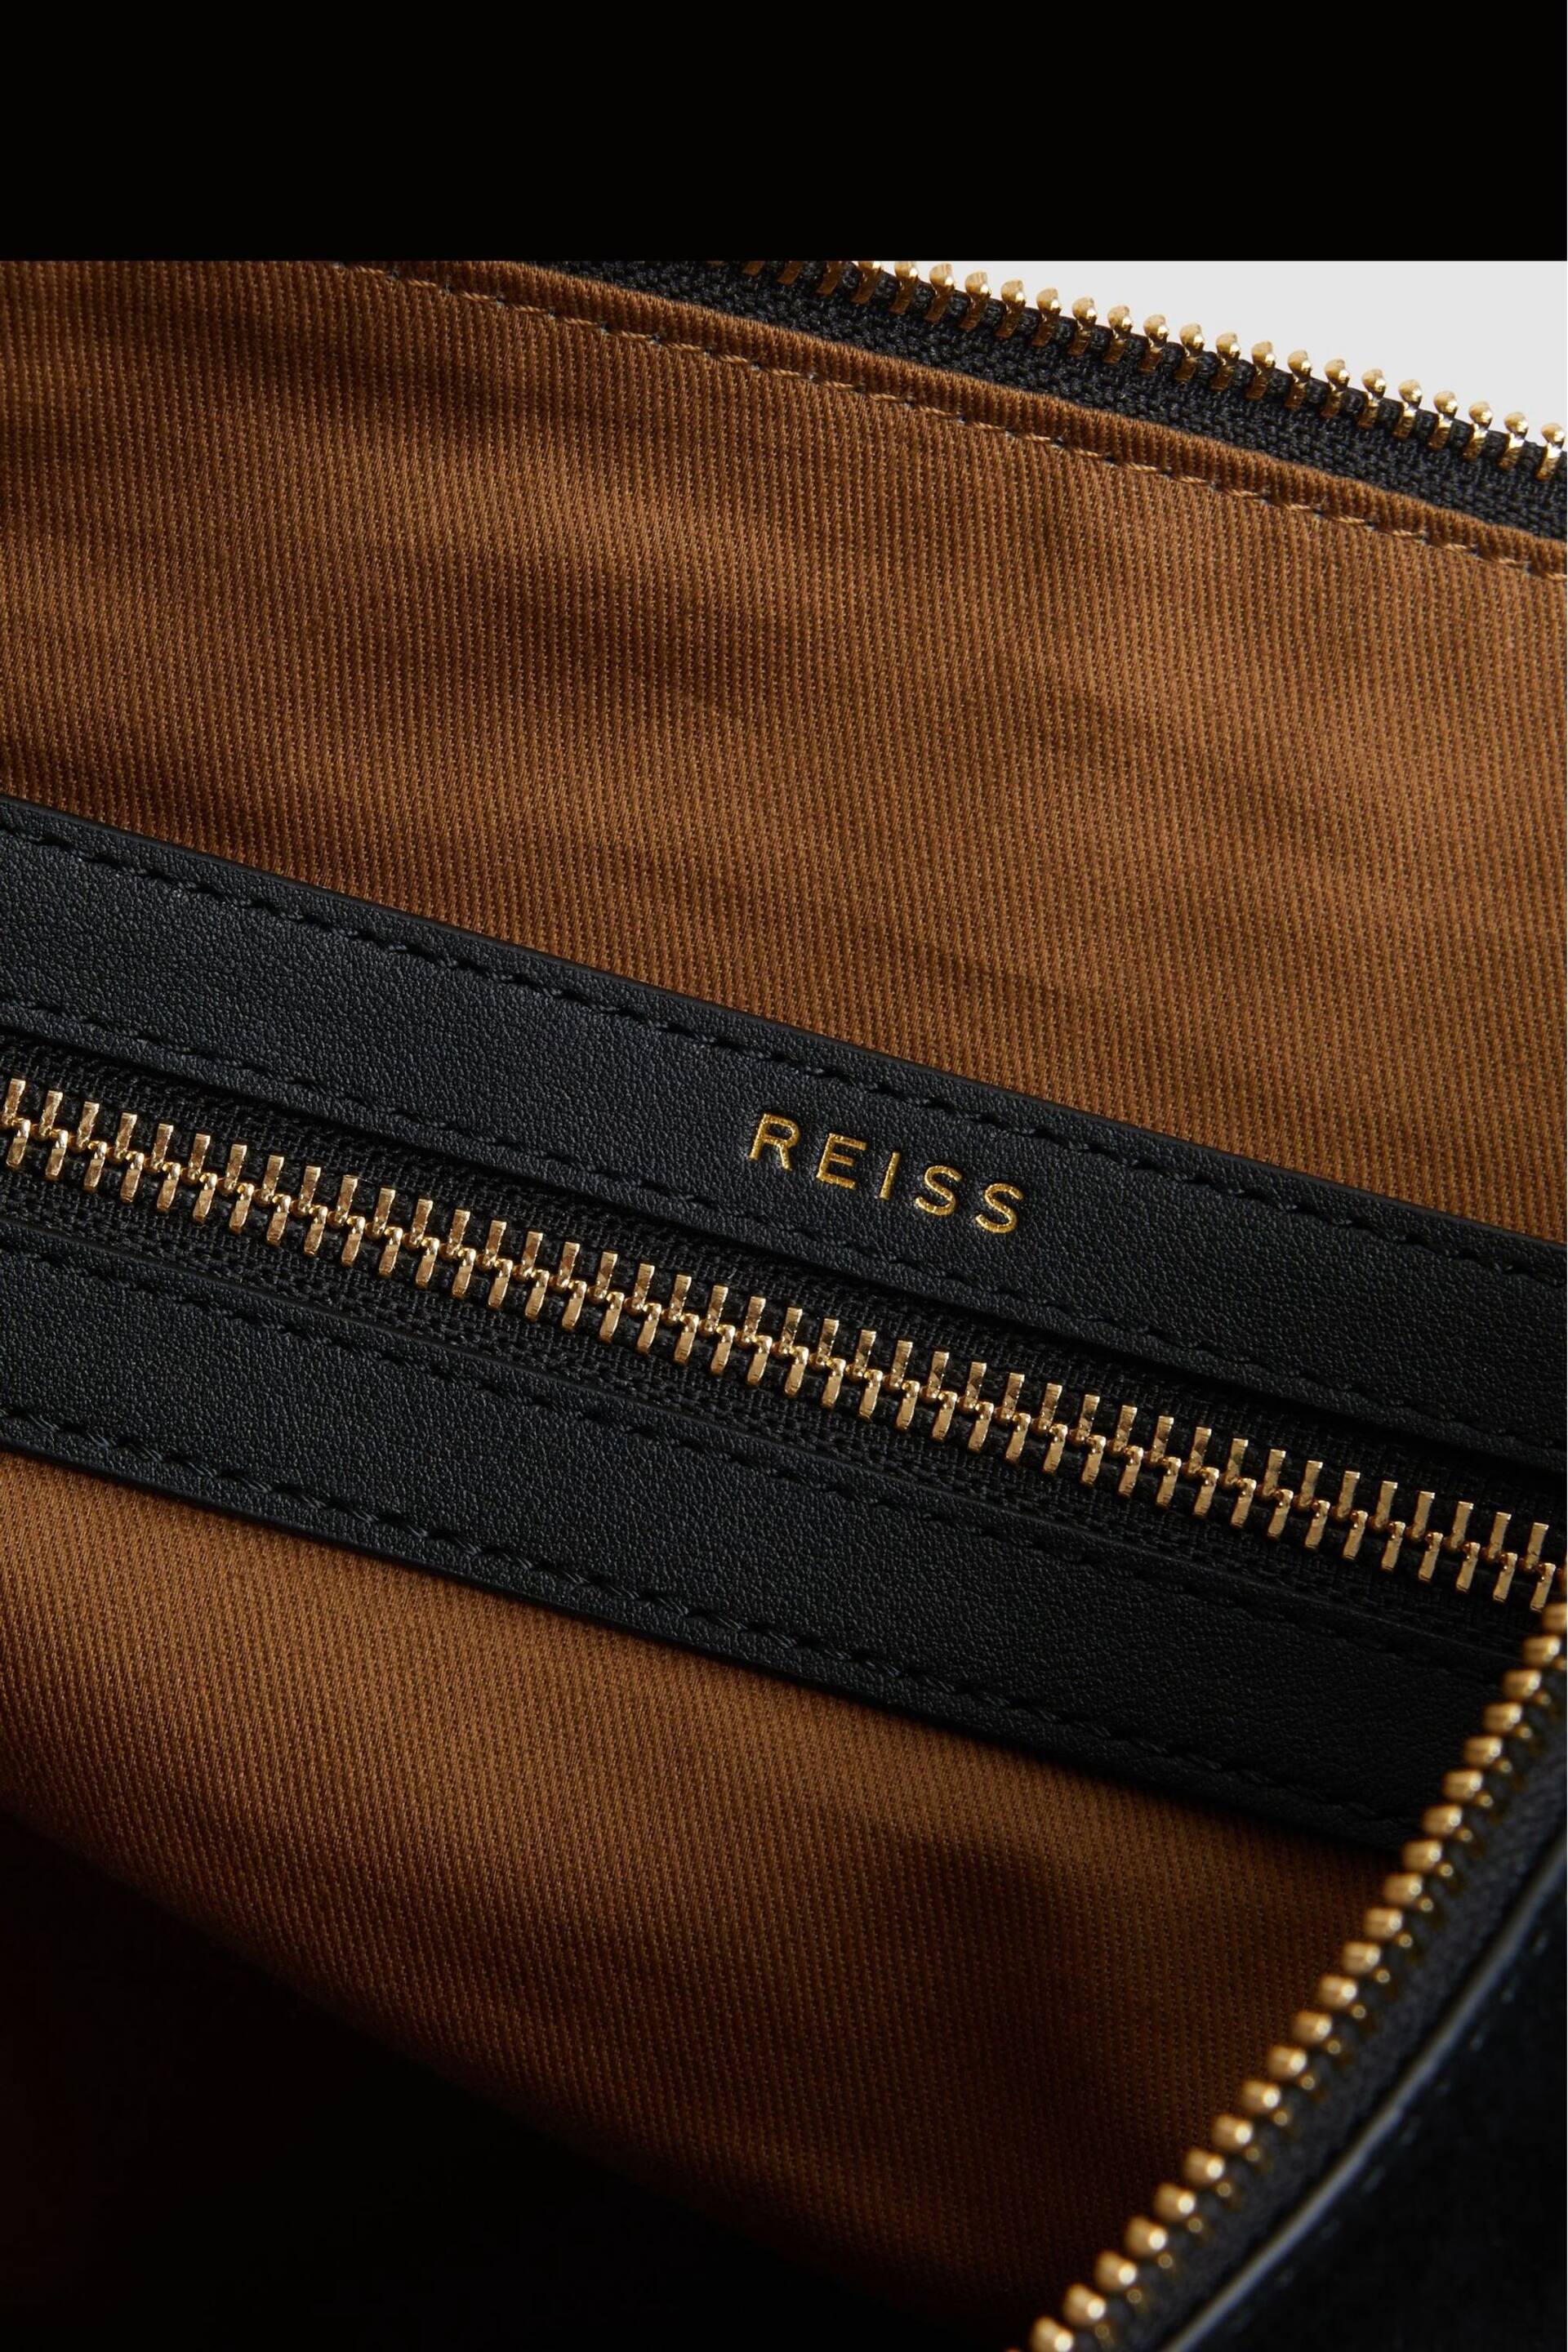 Reiss Black Vigo Leather Suede Handbag - Image 4 of 6